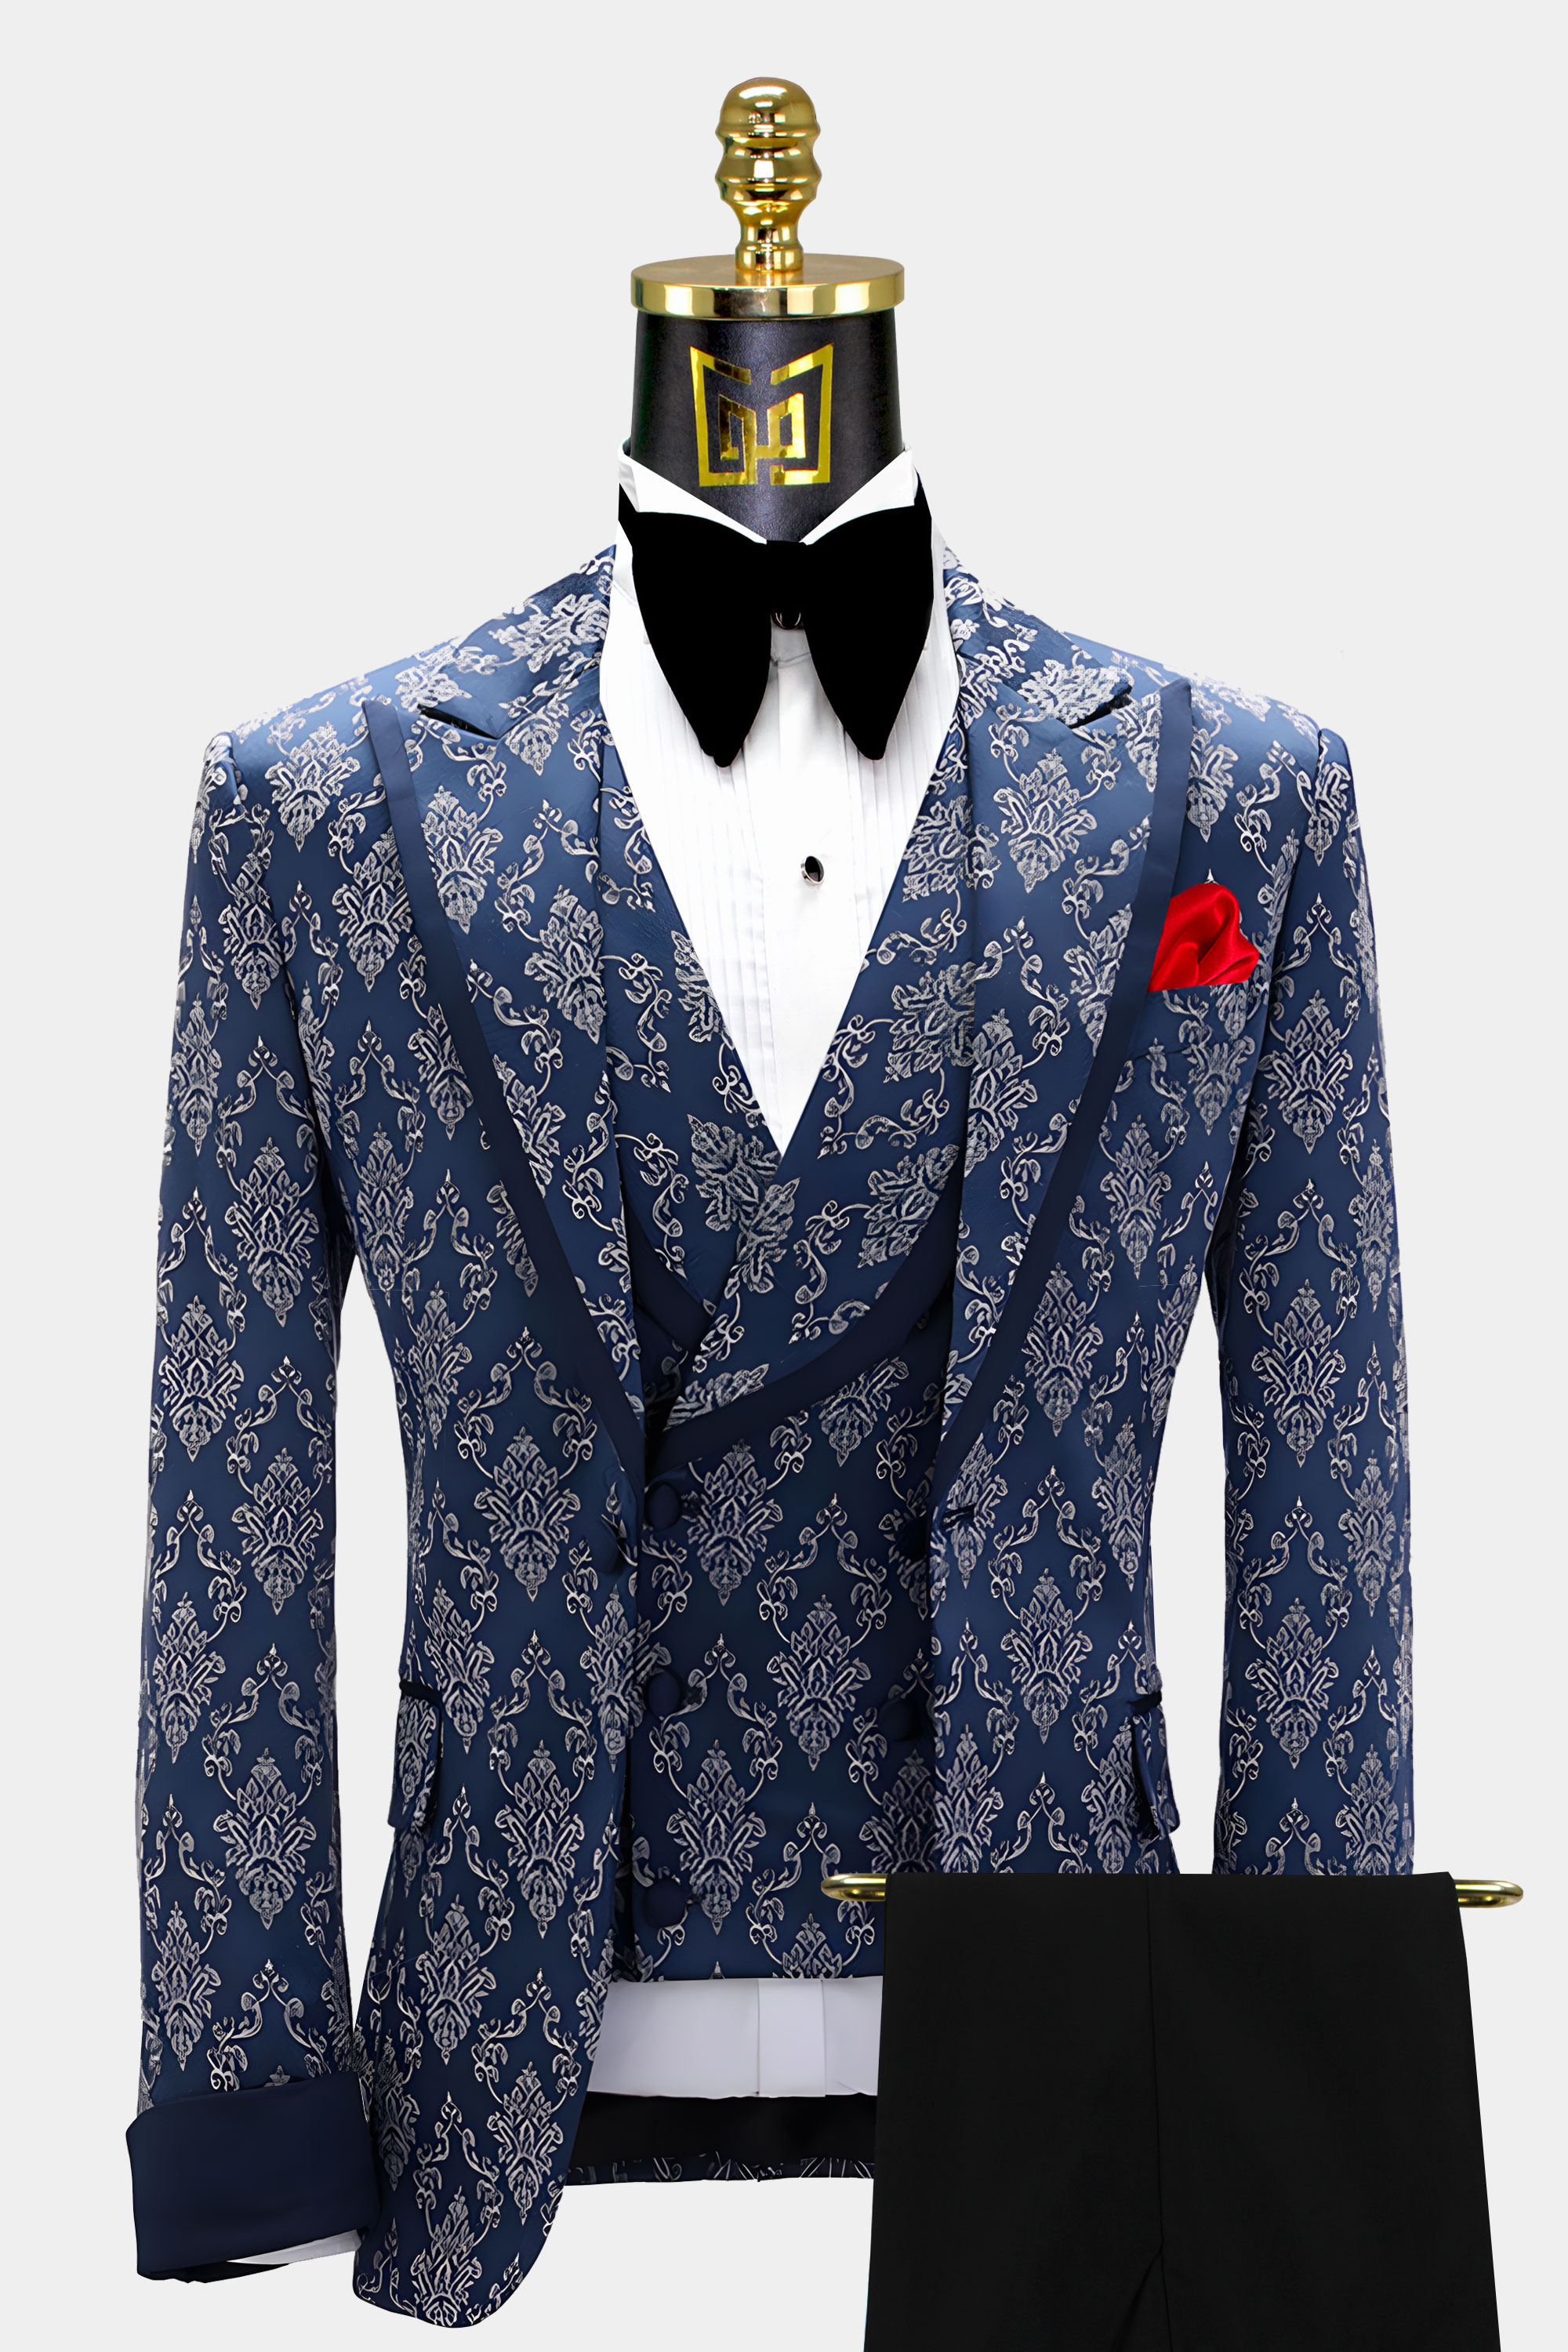 Grey-and-Navy-Blue-Wedding-Groom-Tuxedo-Suit-from-Gentlemansguru.com